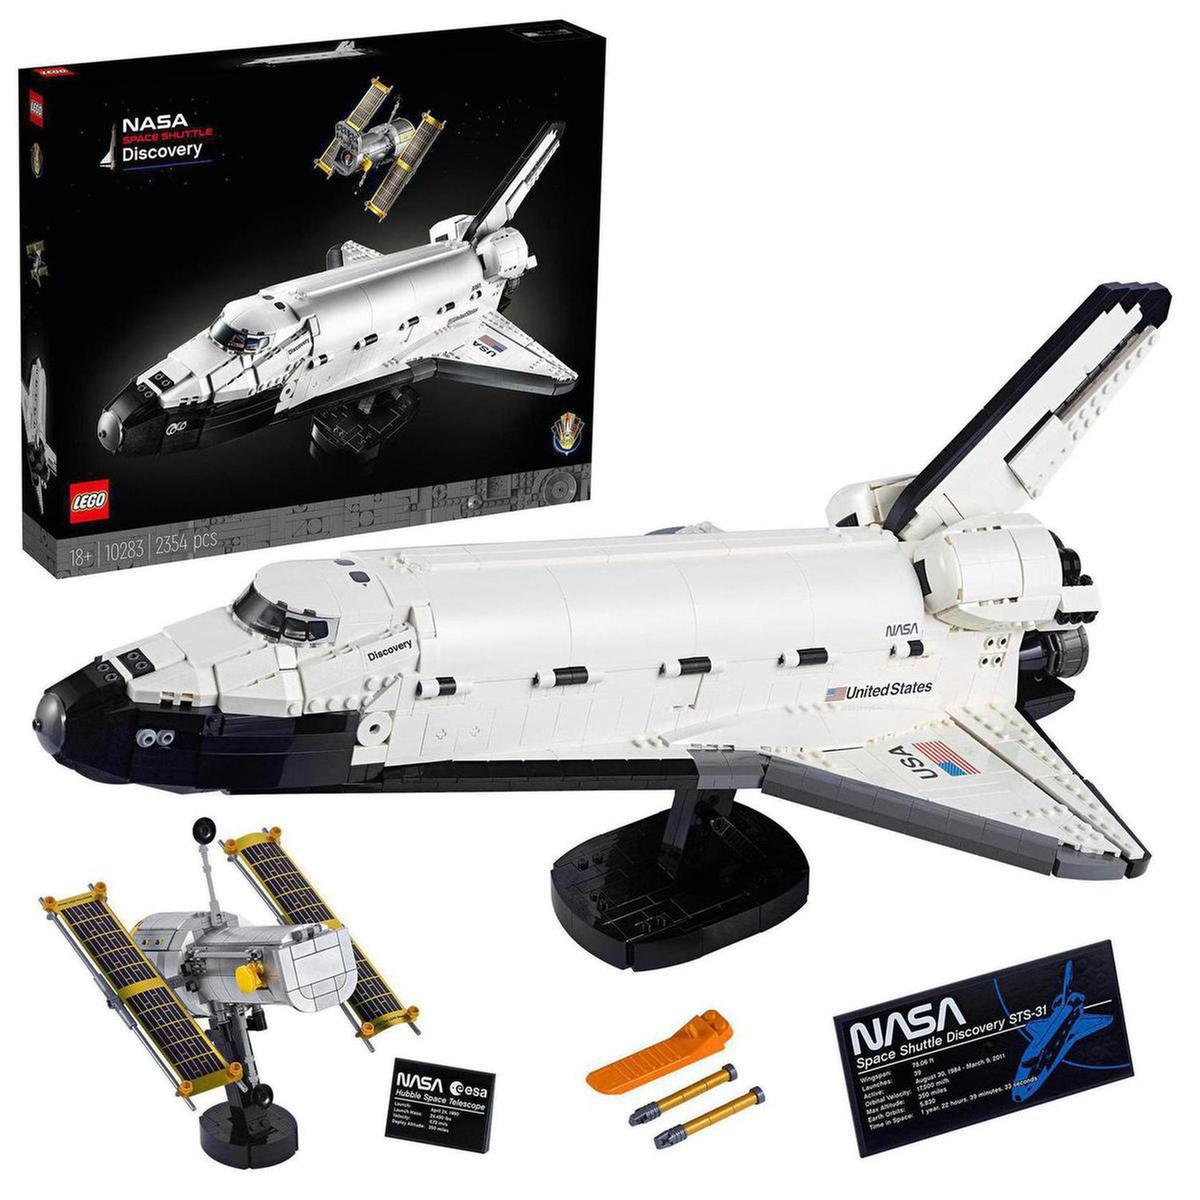 LEGO - Transbordador Espacial Discovery de la NASA - 10283 | Lego Creator |  Toys"R"Us España